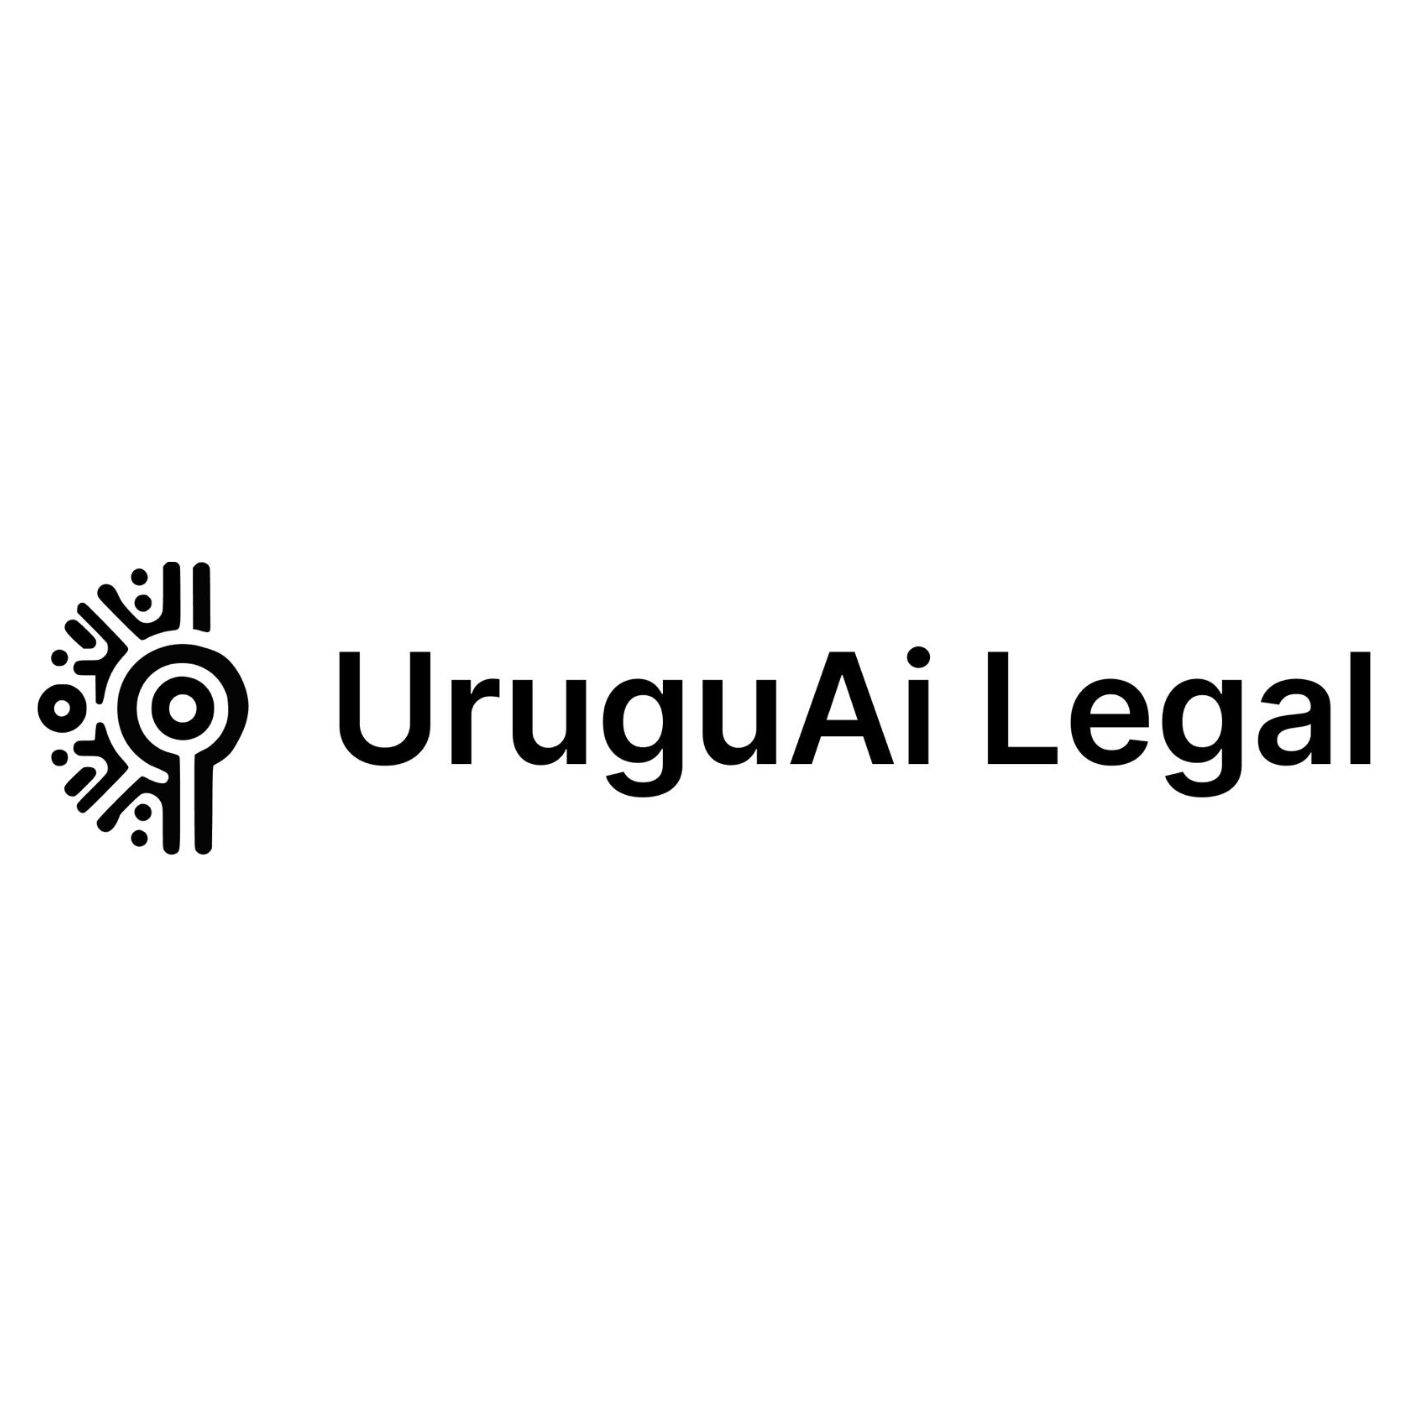 UruguAi Legal